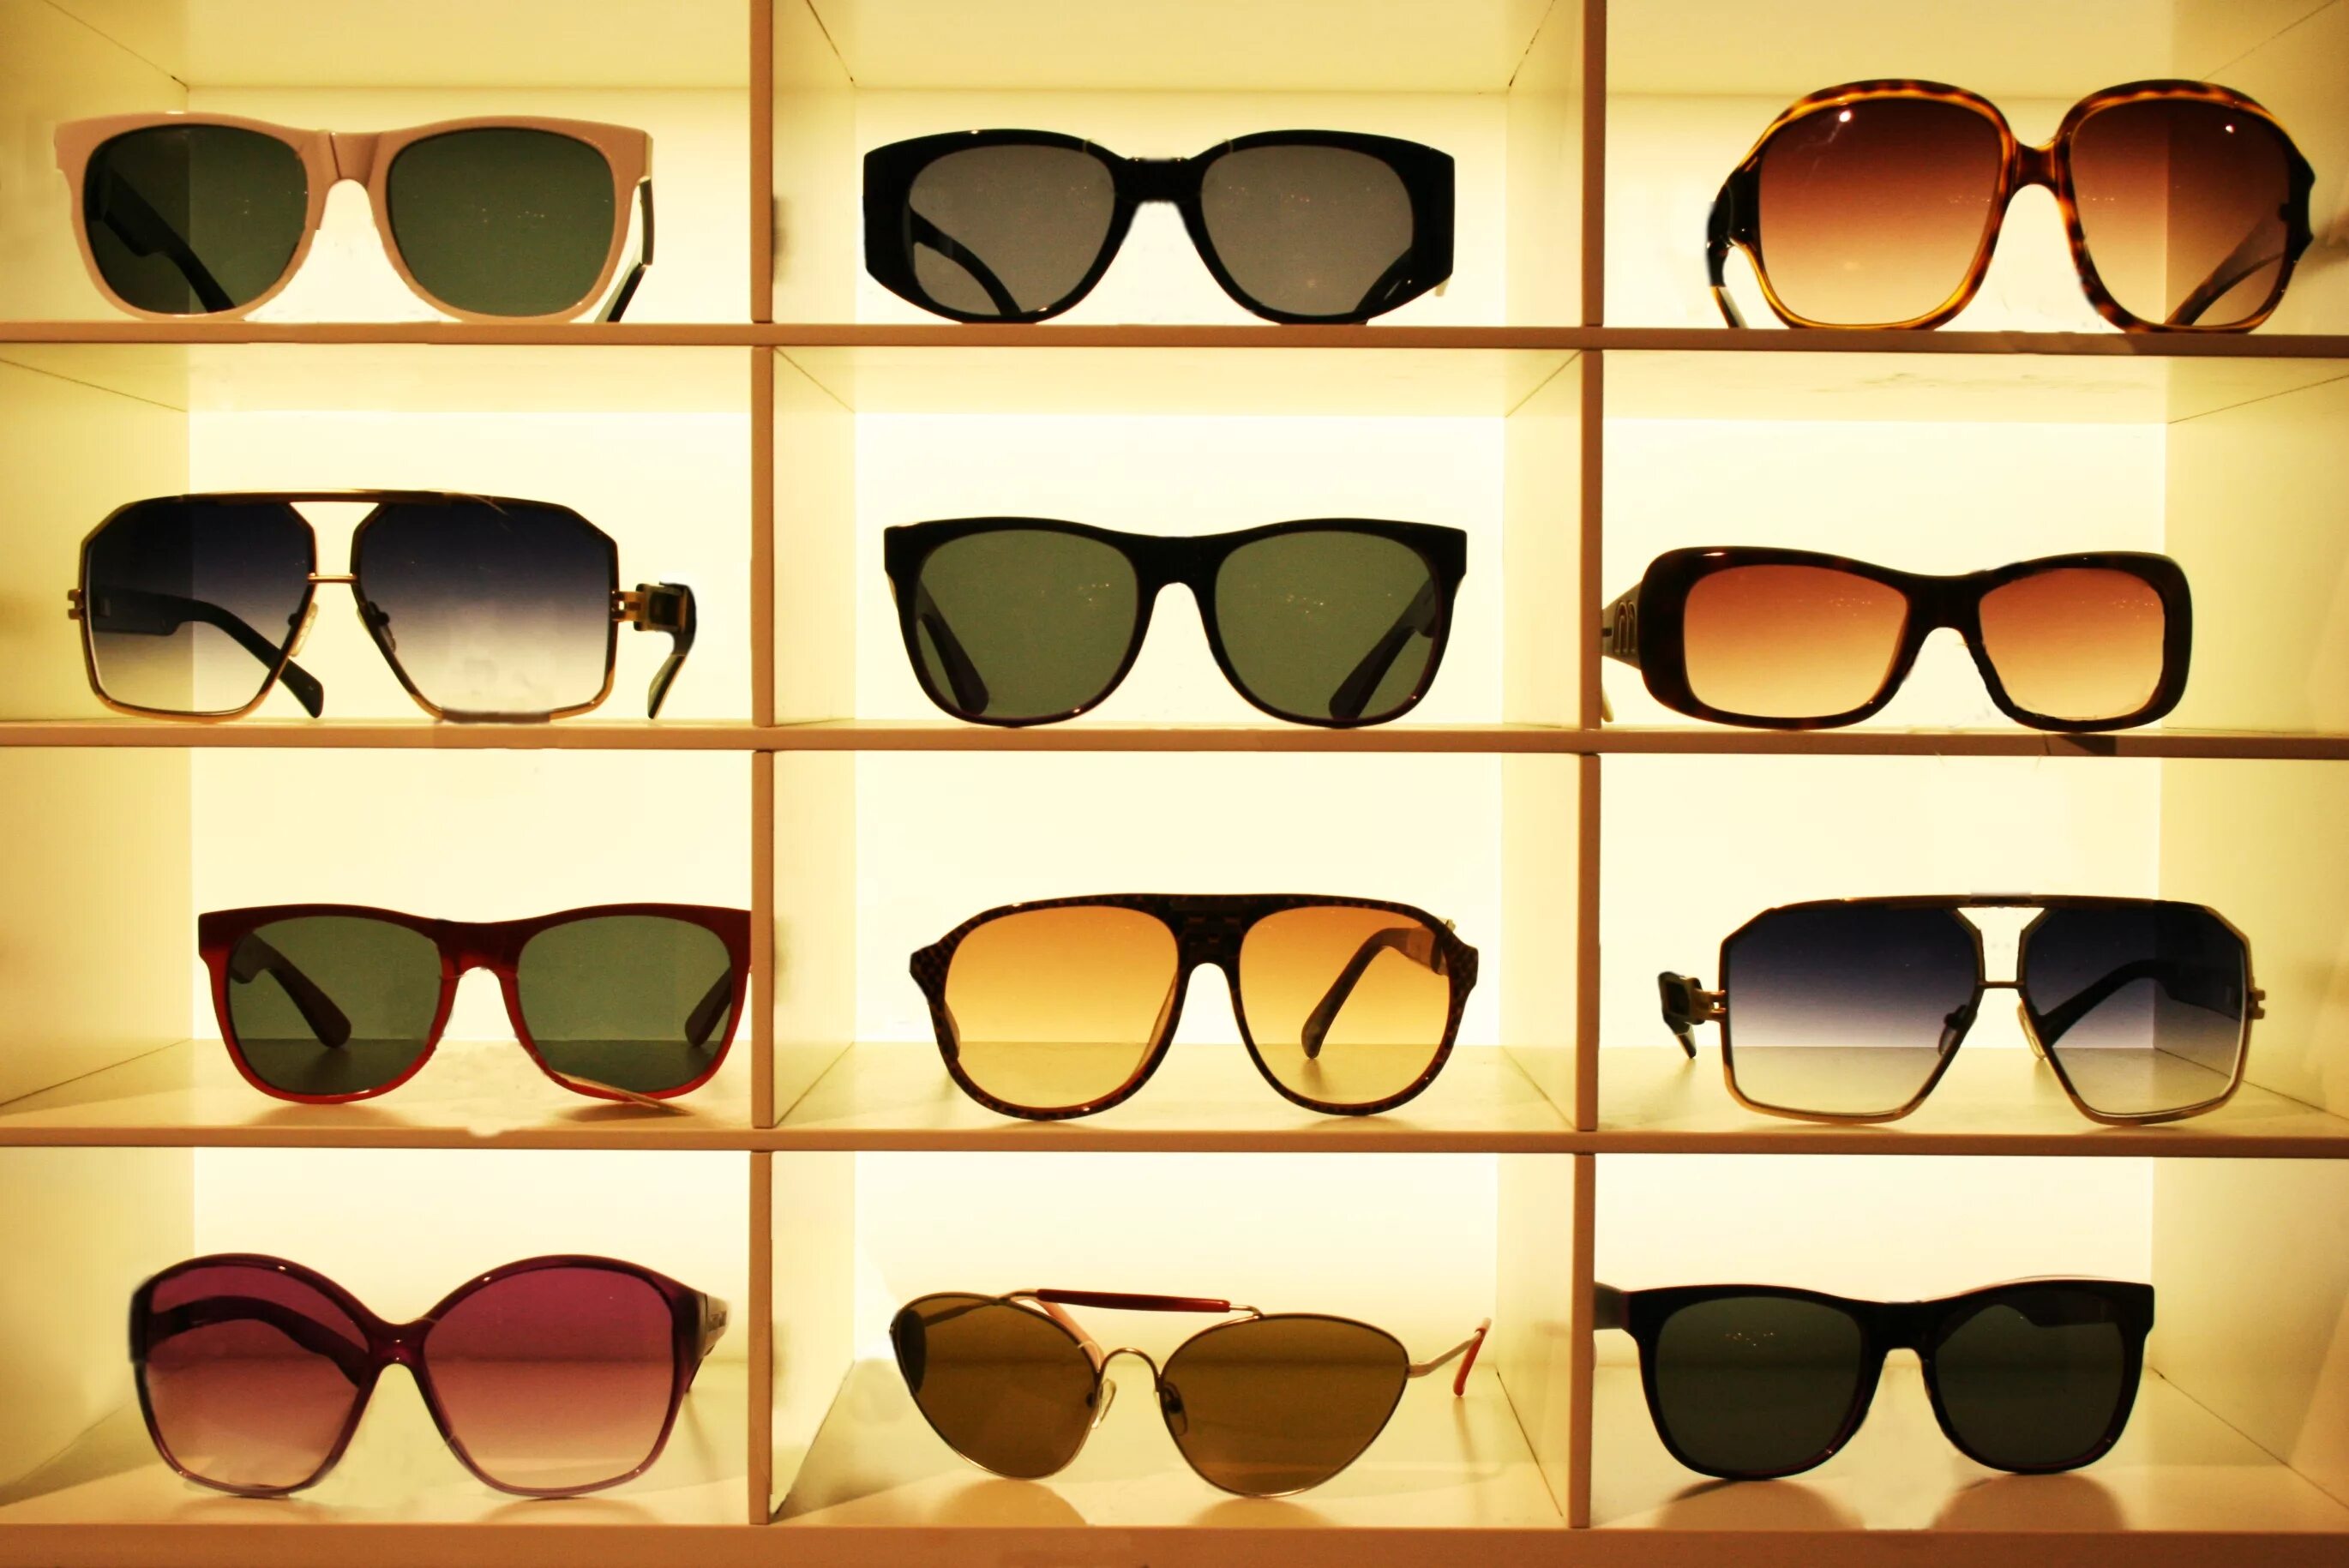 Нужно купить очки. Солнечные очки. Формы очков солнцезащитных. Разнообразные очки. Солнцезащитные очки в оптике.